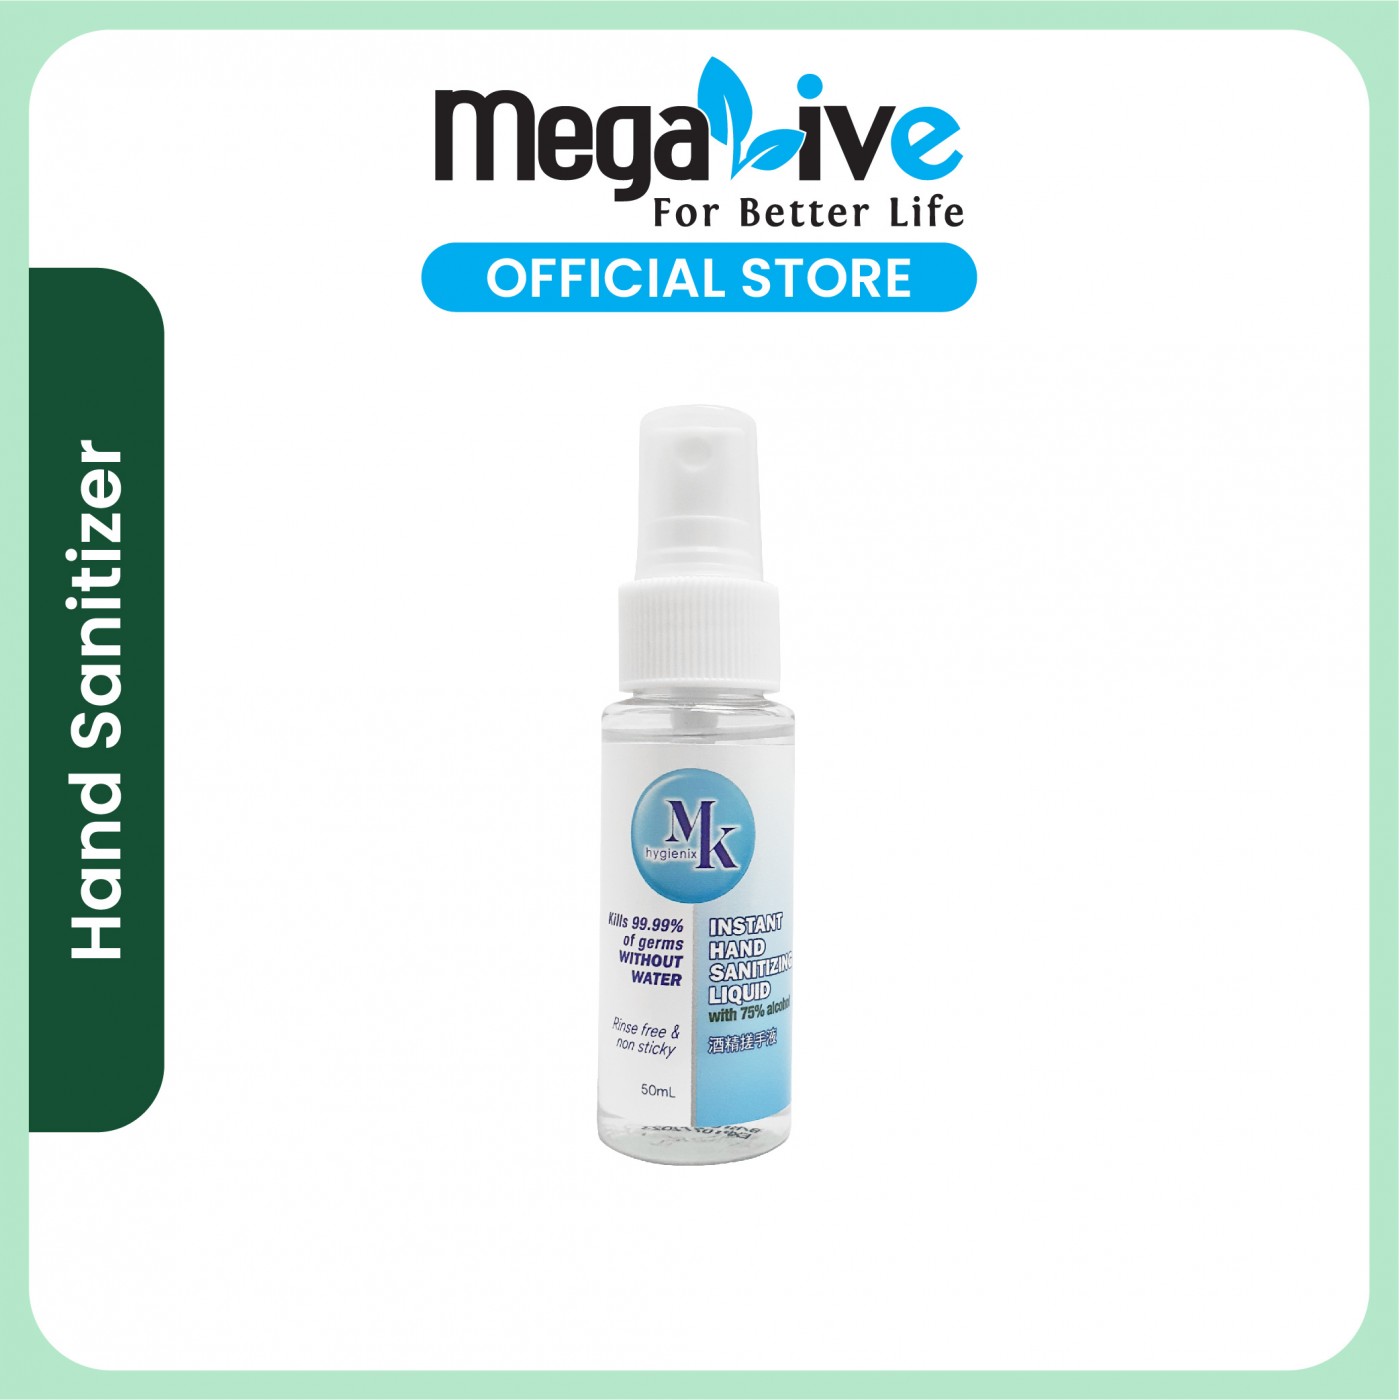 MK hygienix Instant Hand Sanitizer Liquid Spray 50 mL